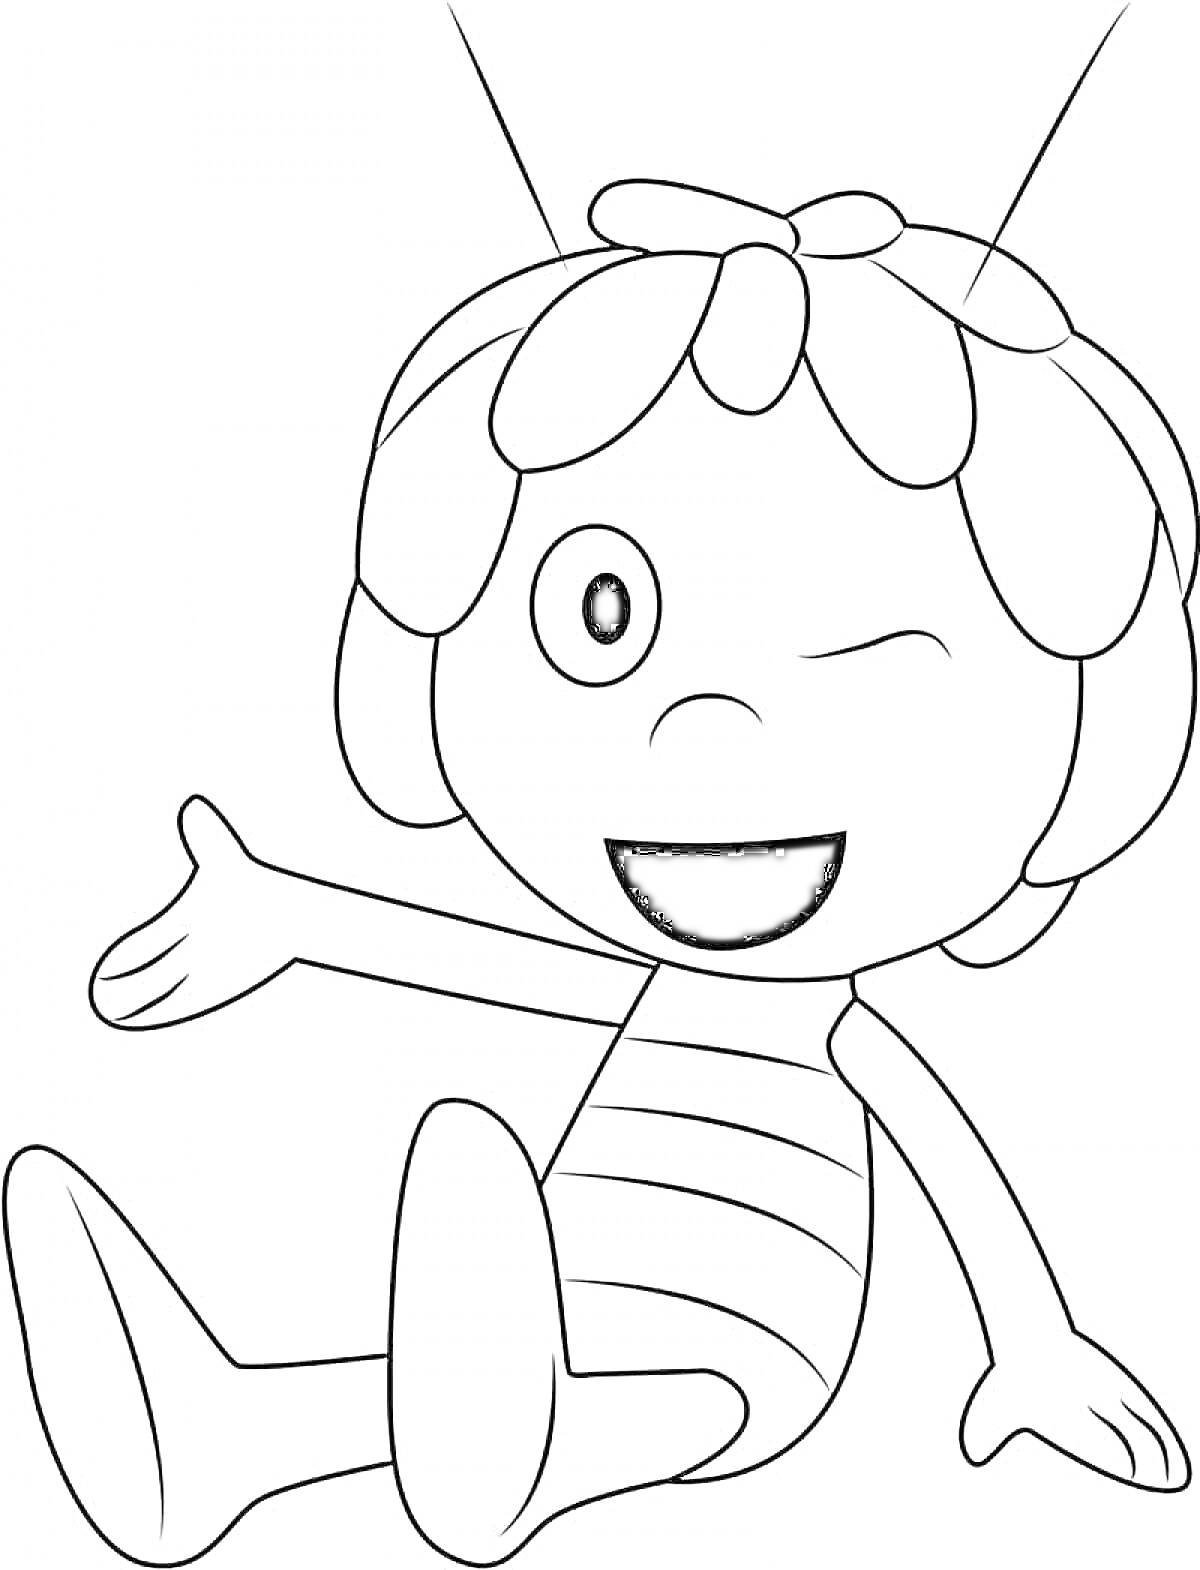 Раскраска Рисунок пчелки, которая сидит с подмигивающим глазом, двумя антеннами на голове и вытянутой рукой вперед.